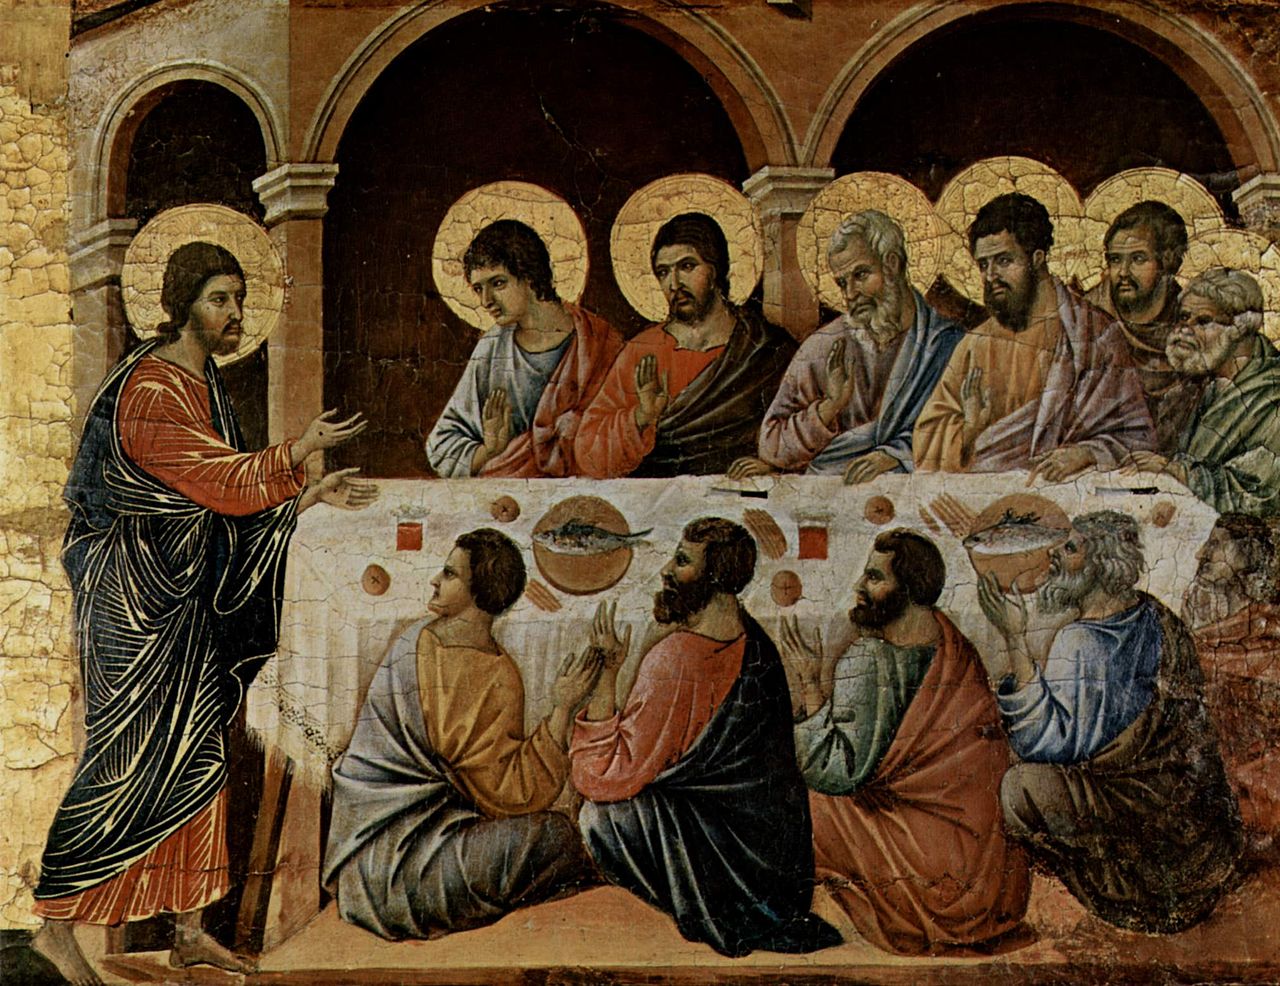 Duccio di Buoninsegna, L'Apparizione di Cristo durante la cena degli apostoli, Museo dell'Opera del Duomo - Siena